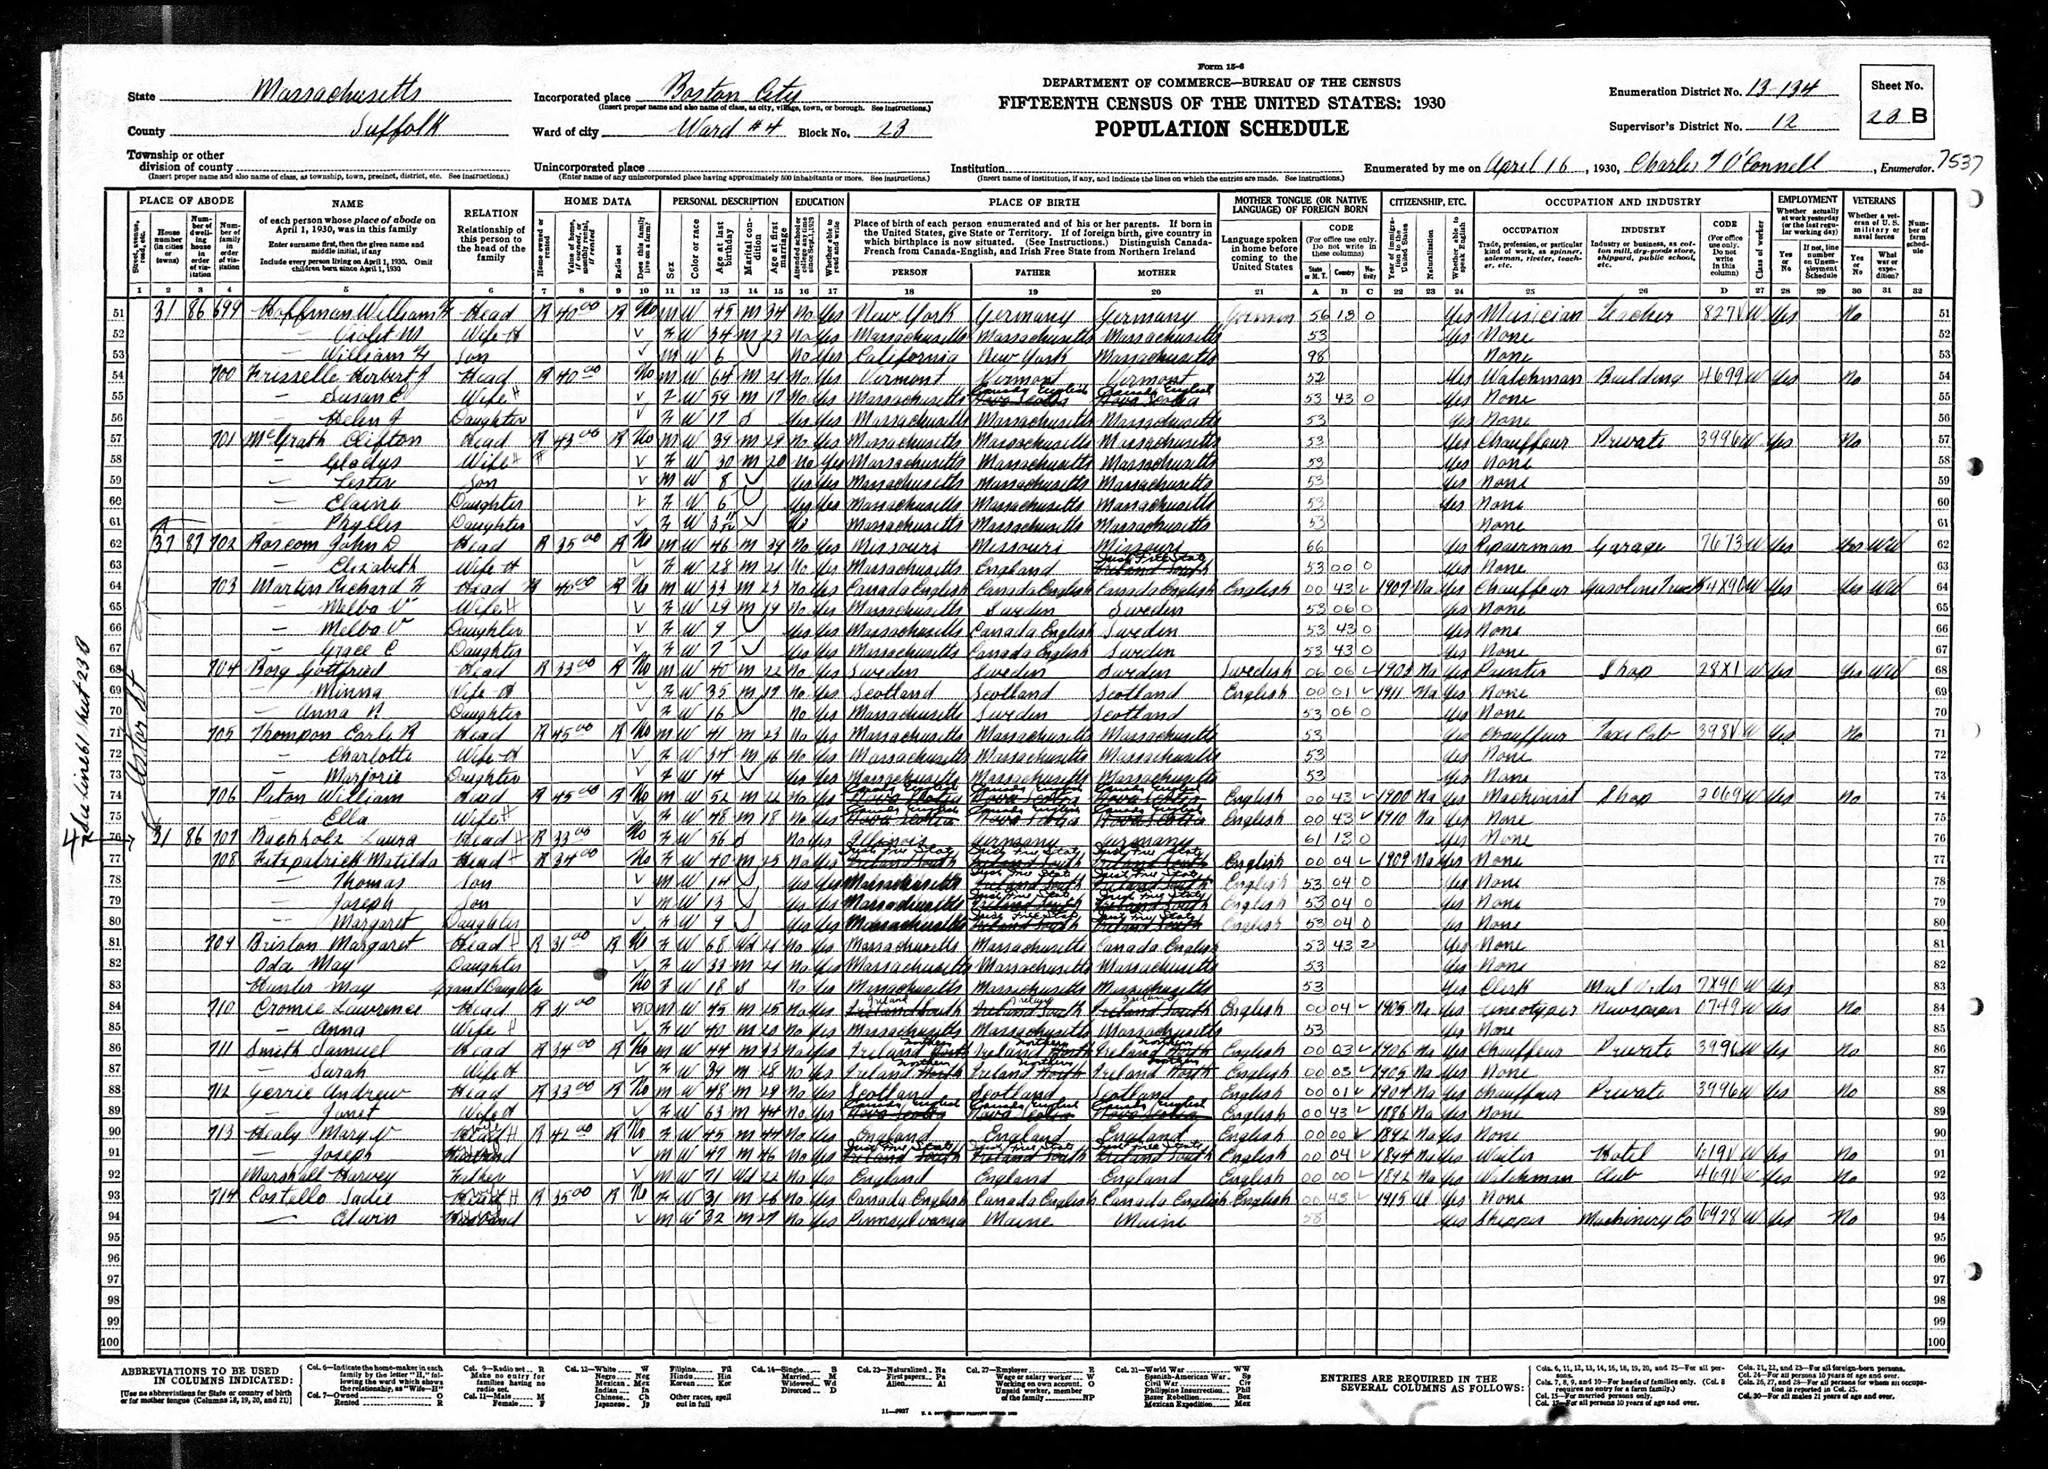 1930 US Census, Lester Magrath, line 59